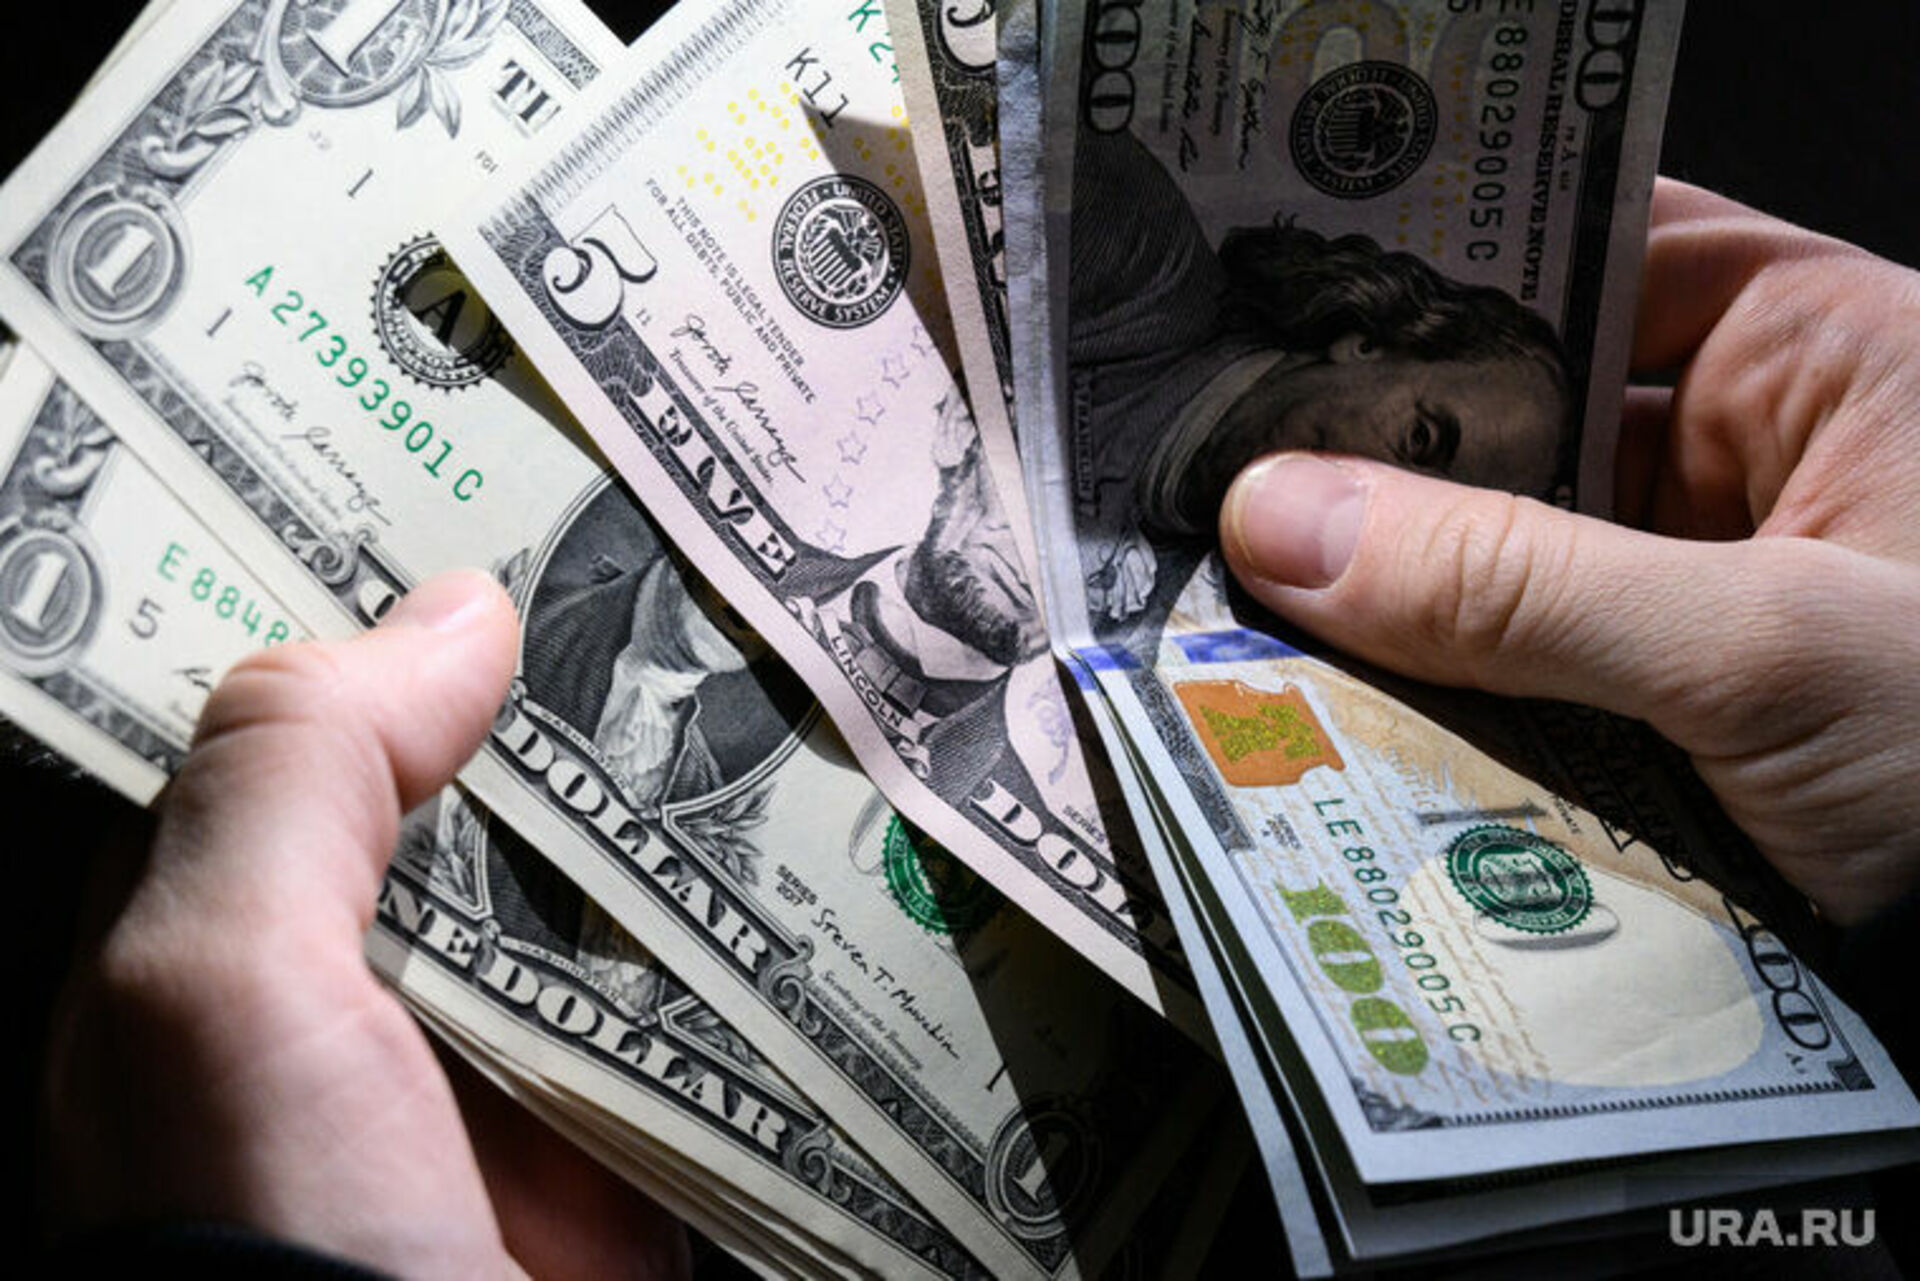 Купить новые доллары в екатеринбурге. Доллар фото. Доллары в руках. Доллар (валюта). Доллары в рубли.